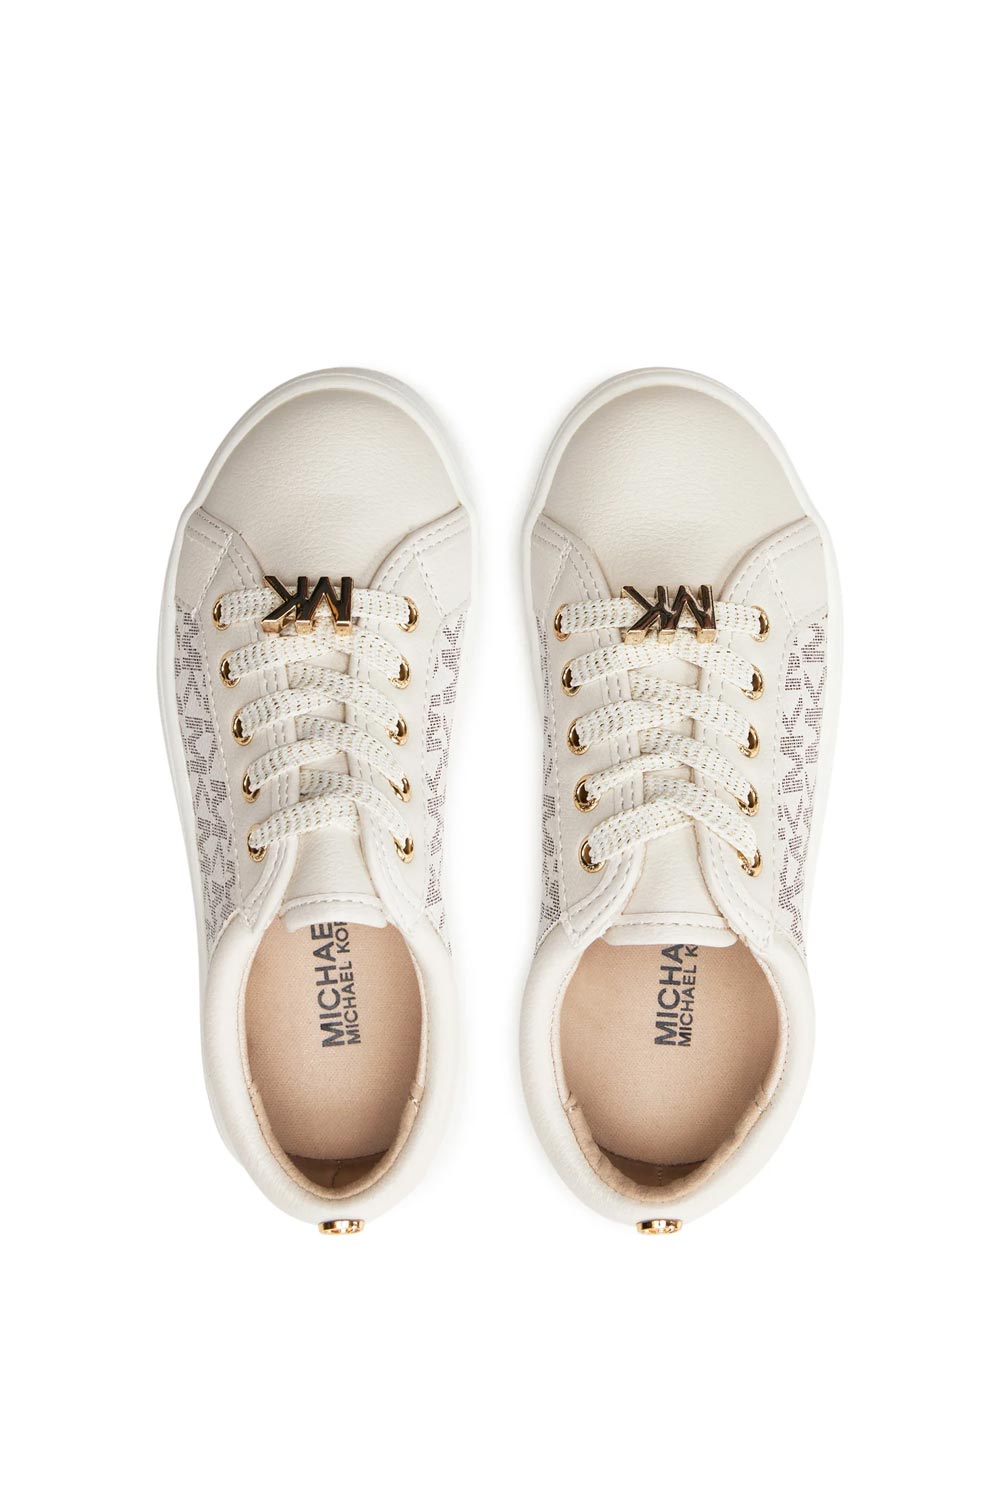 מייקל קורס נעלי סניקרס Jem Monogram בצבע שמנת לילדות ונערות-Michael Kors-28-נאקו